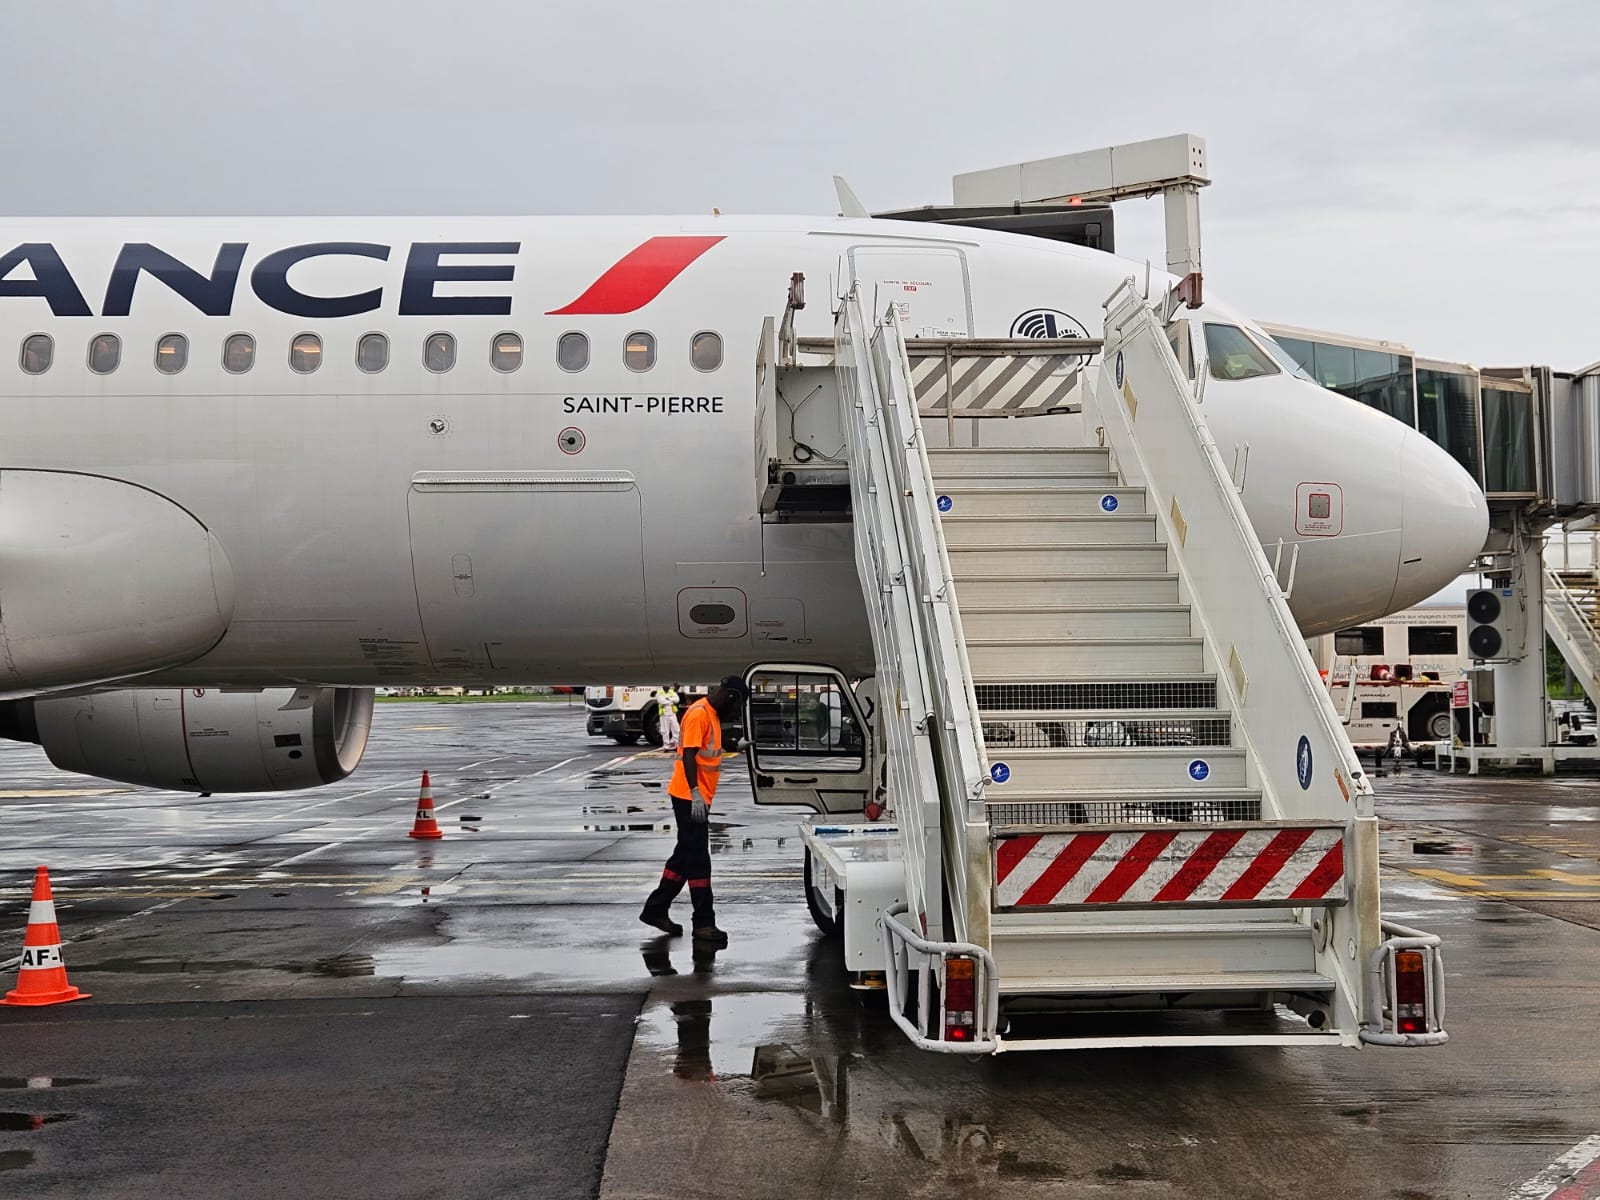     Des passagers d'un vol vers la Guyane bloqués à Pointe-à-Pitre

